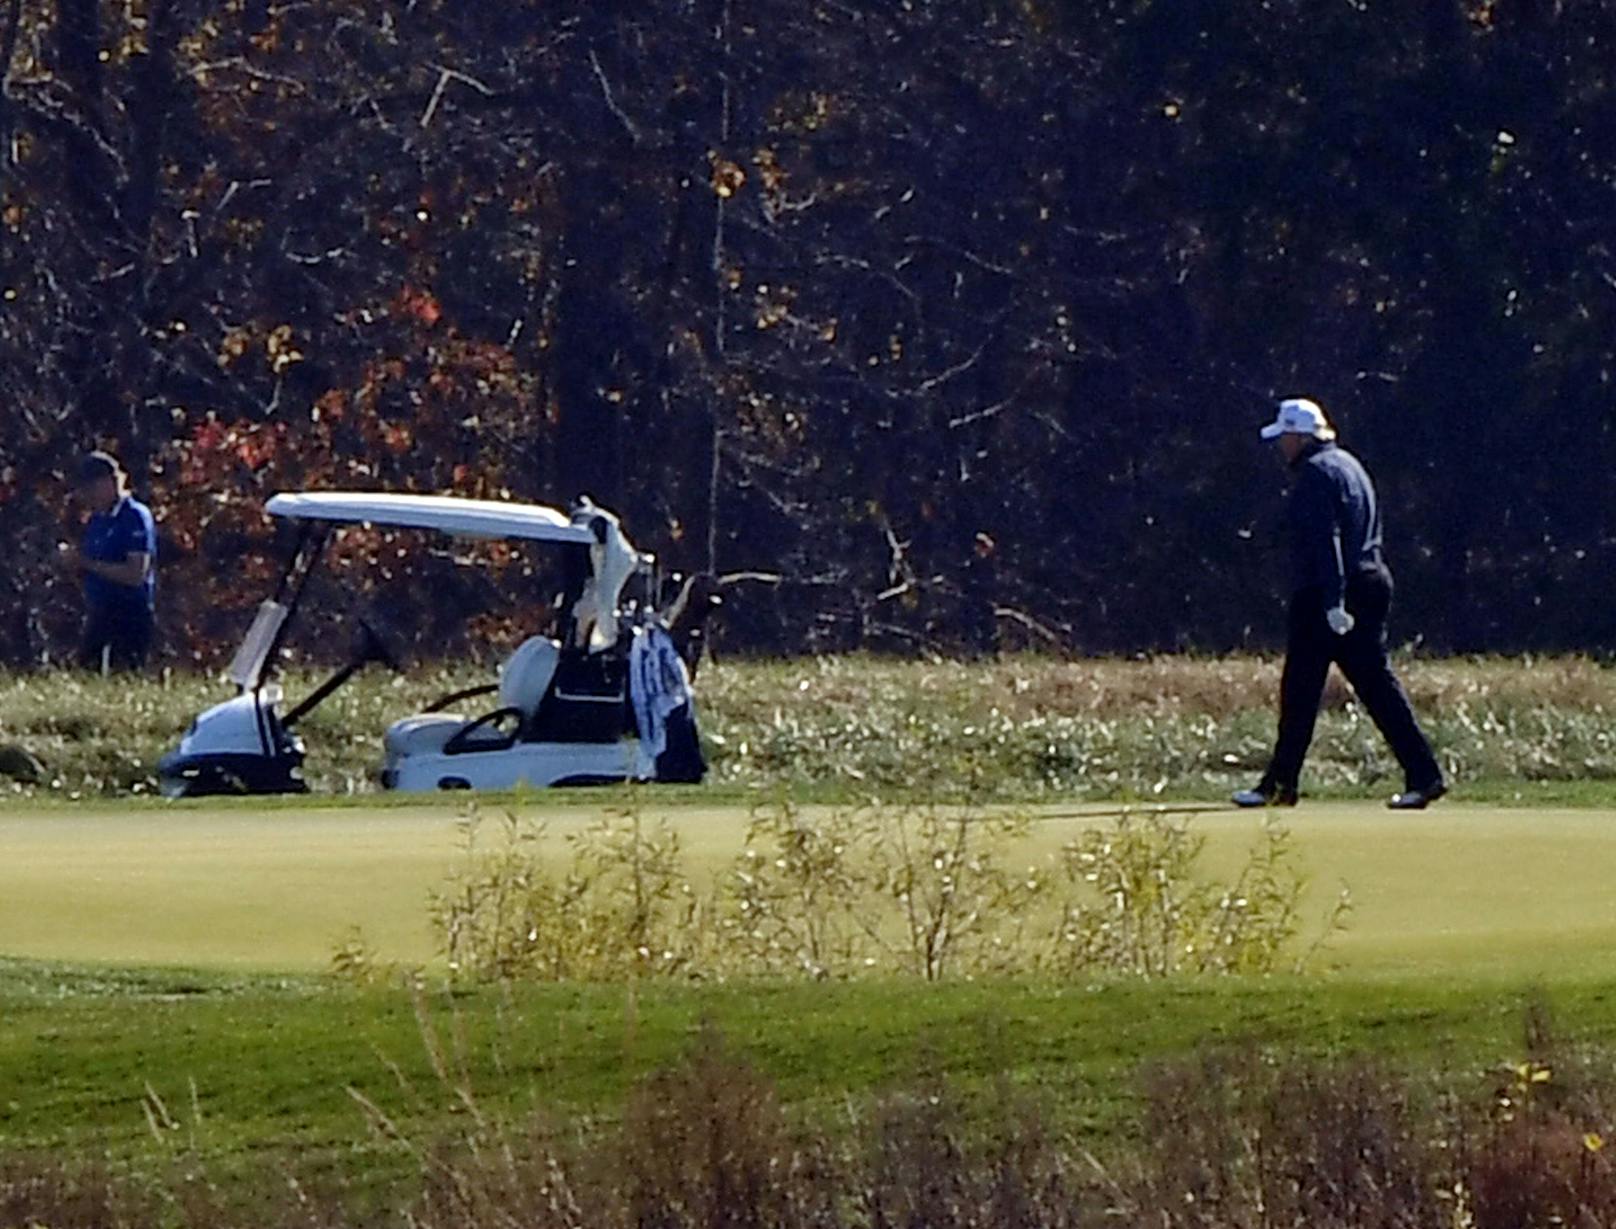 Während Joe Bidens Anhänger den Sieg feierten, <a href="https://www.heute.at/s/usa-waehlen-joe-biden-zum-naechsten-praesidenten-100111317">zog sich Donald Trump auf seinen Golfplatz in Virginia zurück</a> (7. November 2020).